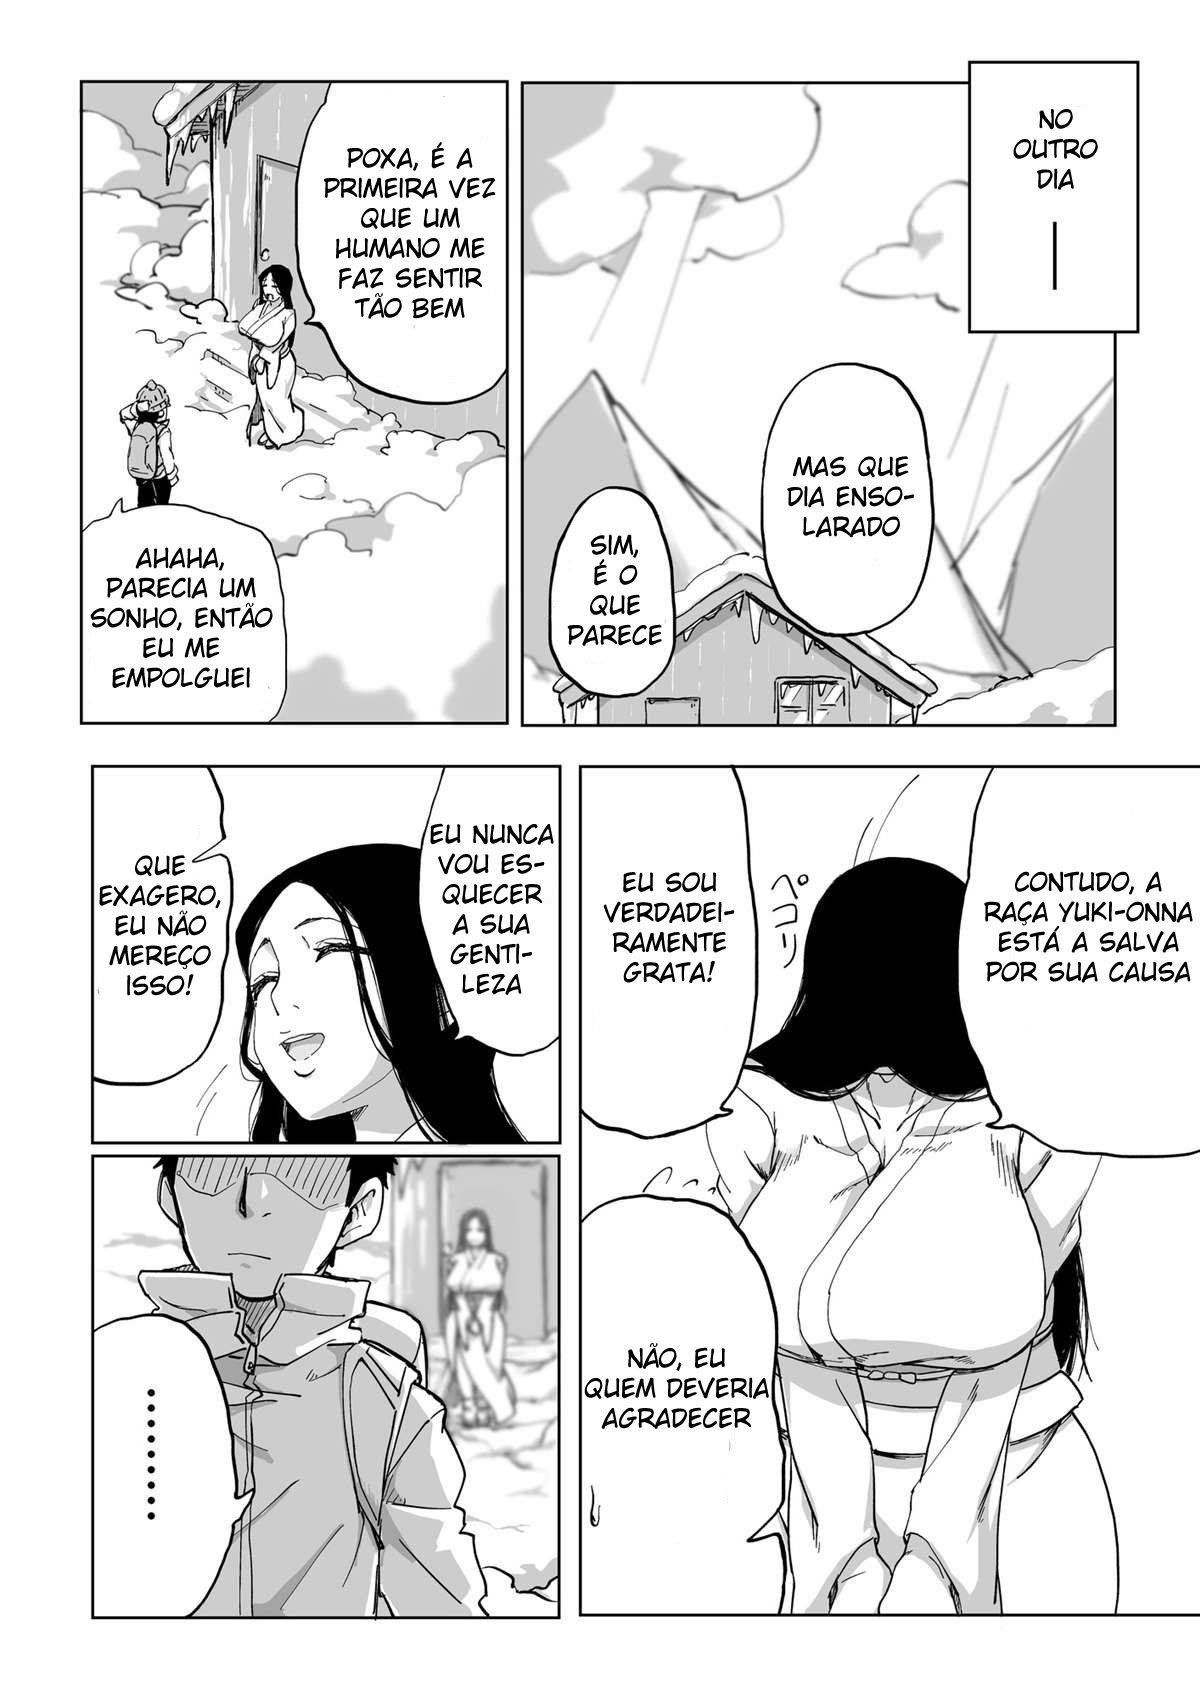 Yuki-Onna é uma lenda de um Espírito da Neve